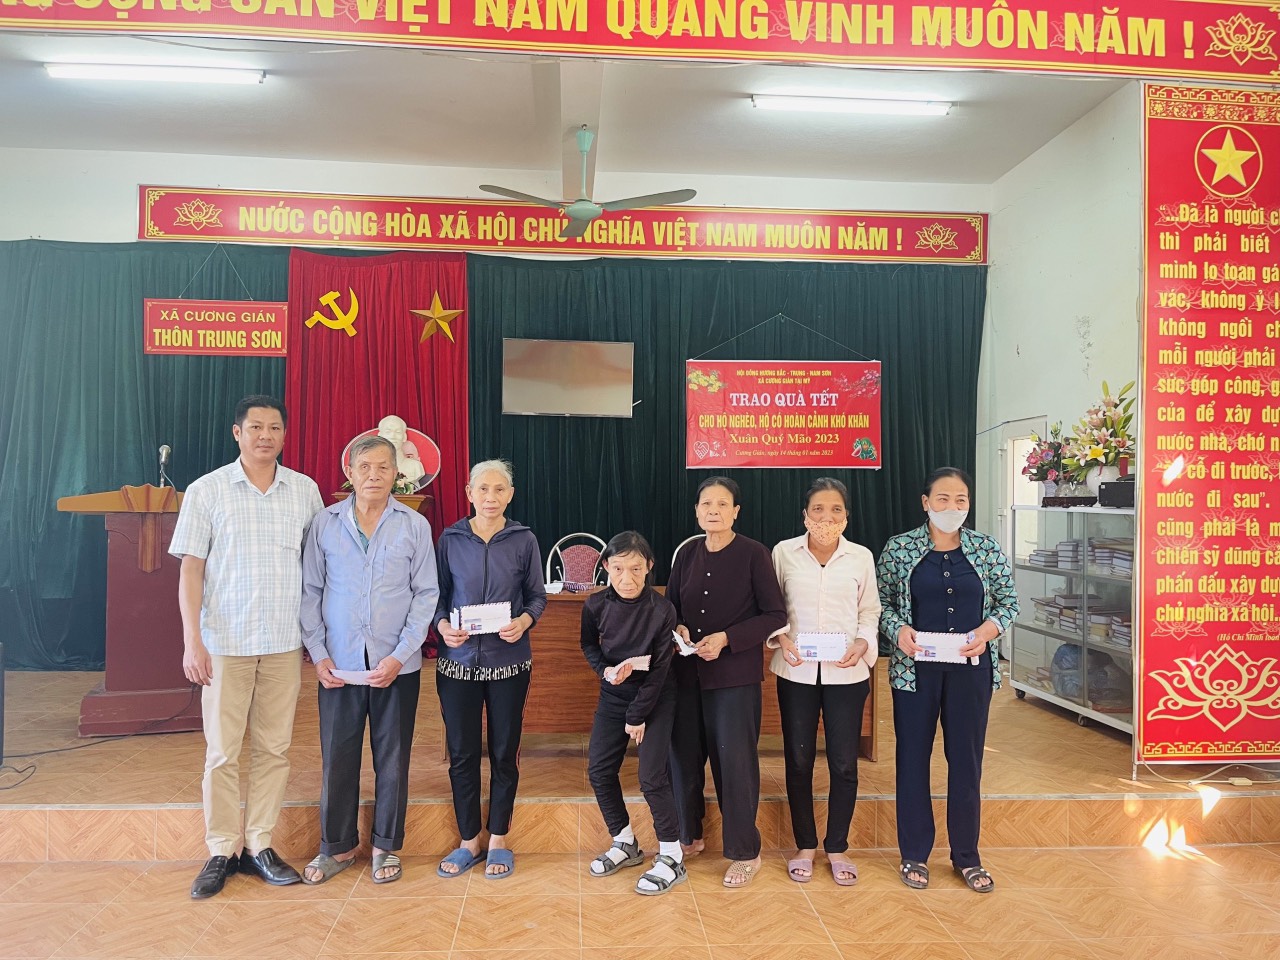 Hội Nông dân xã Cương Gián, huyện Nghi Xuân tổ chức trao tặng quà hộ nghèo, hội viên nông dân có hoàn cảnh khó khăn.